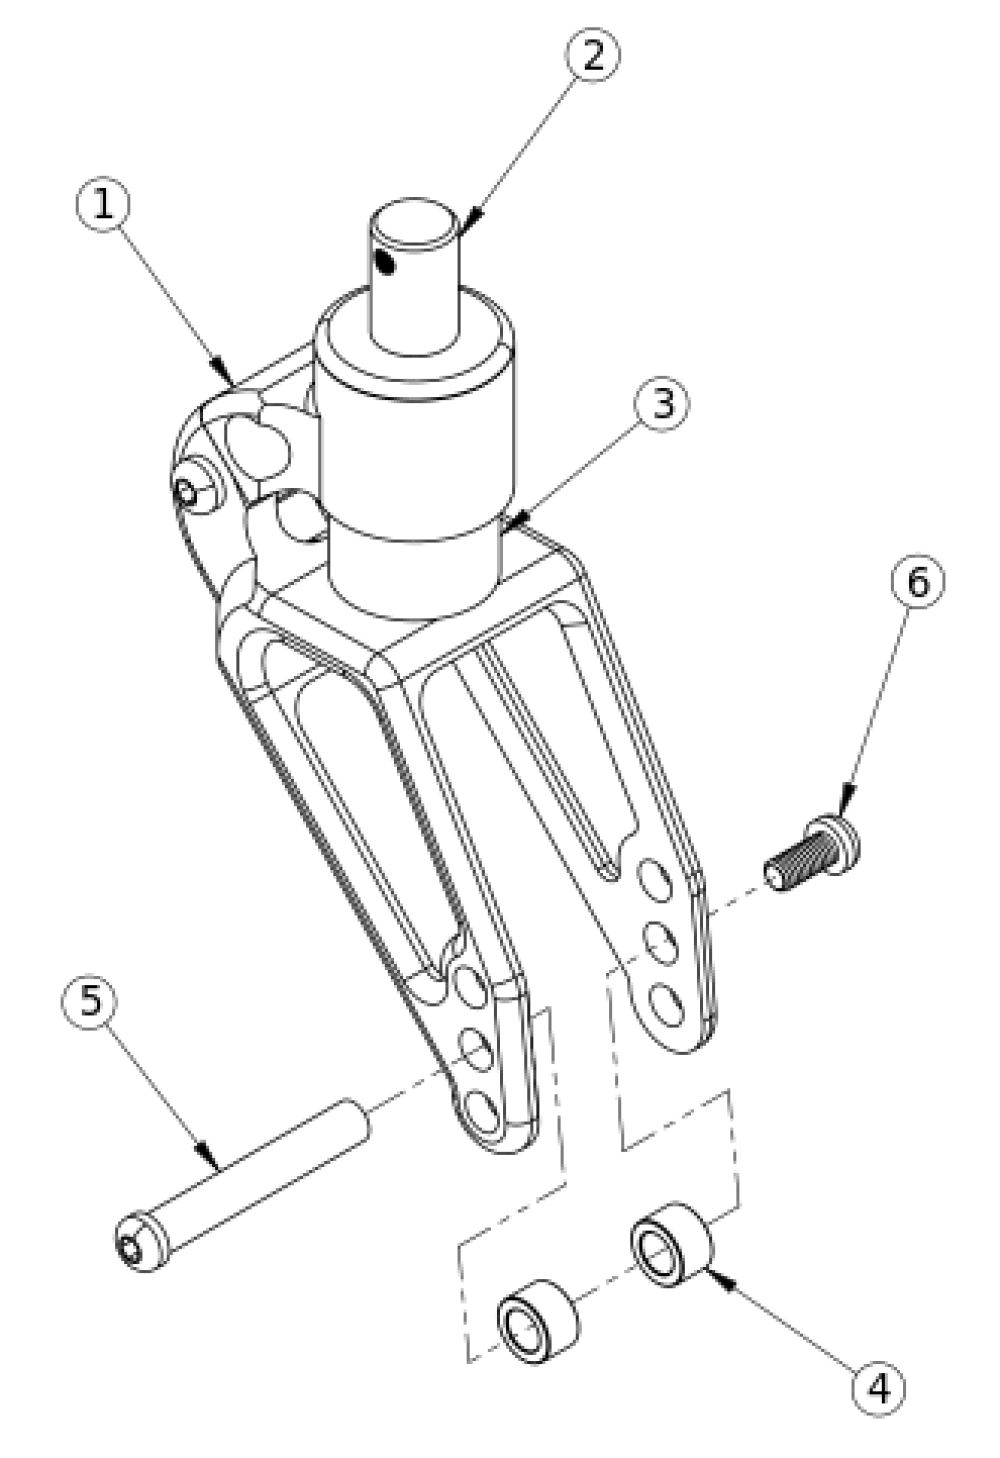 Rogue / Clik / Ethos Frog Legs Suspension Fork (ultra-sport Fork) parts diagram